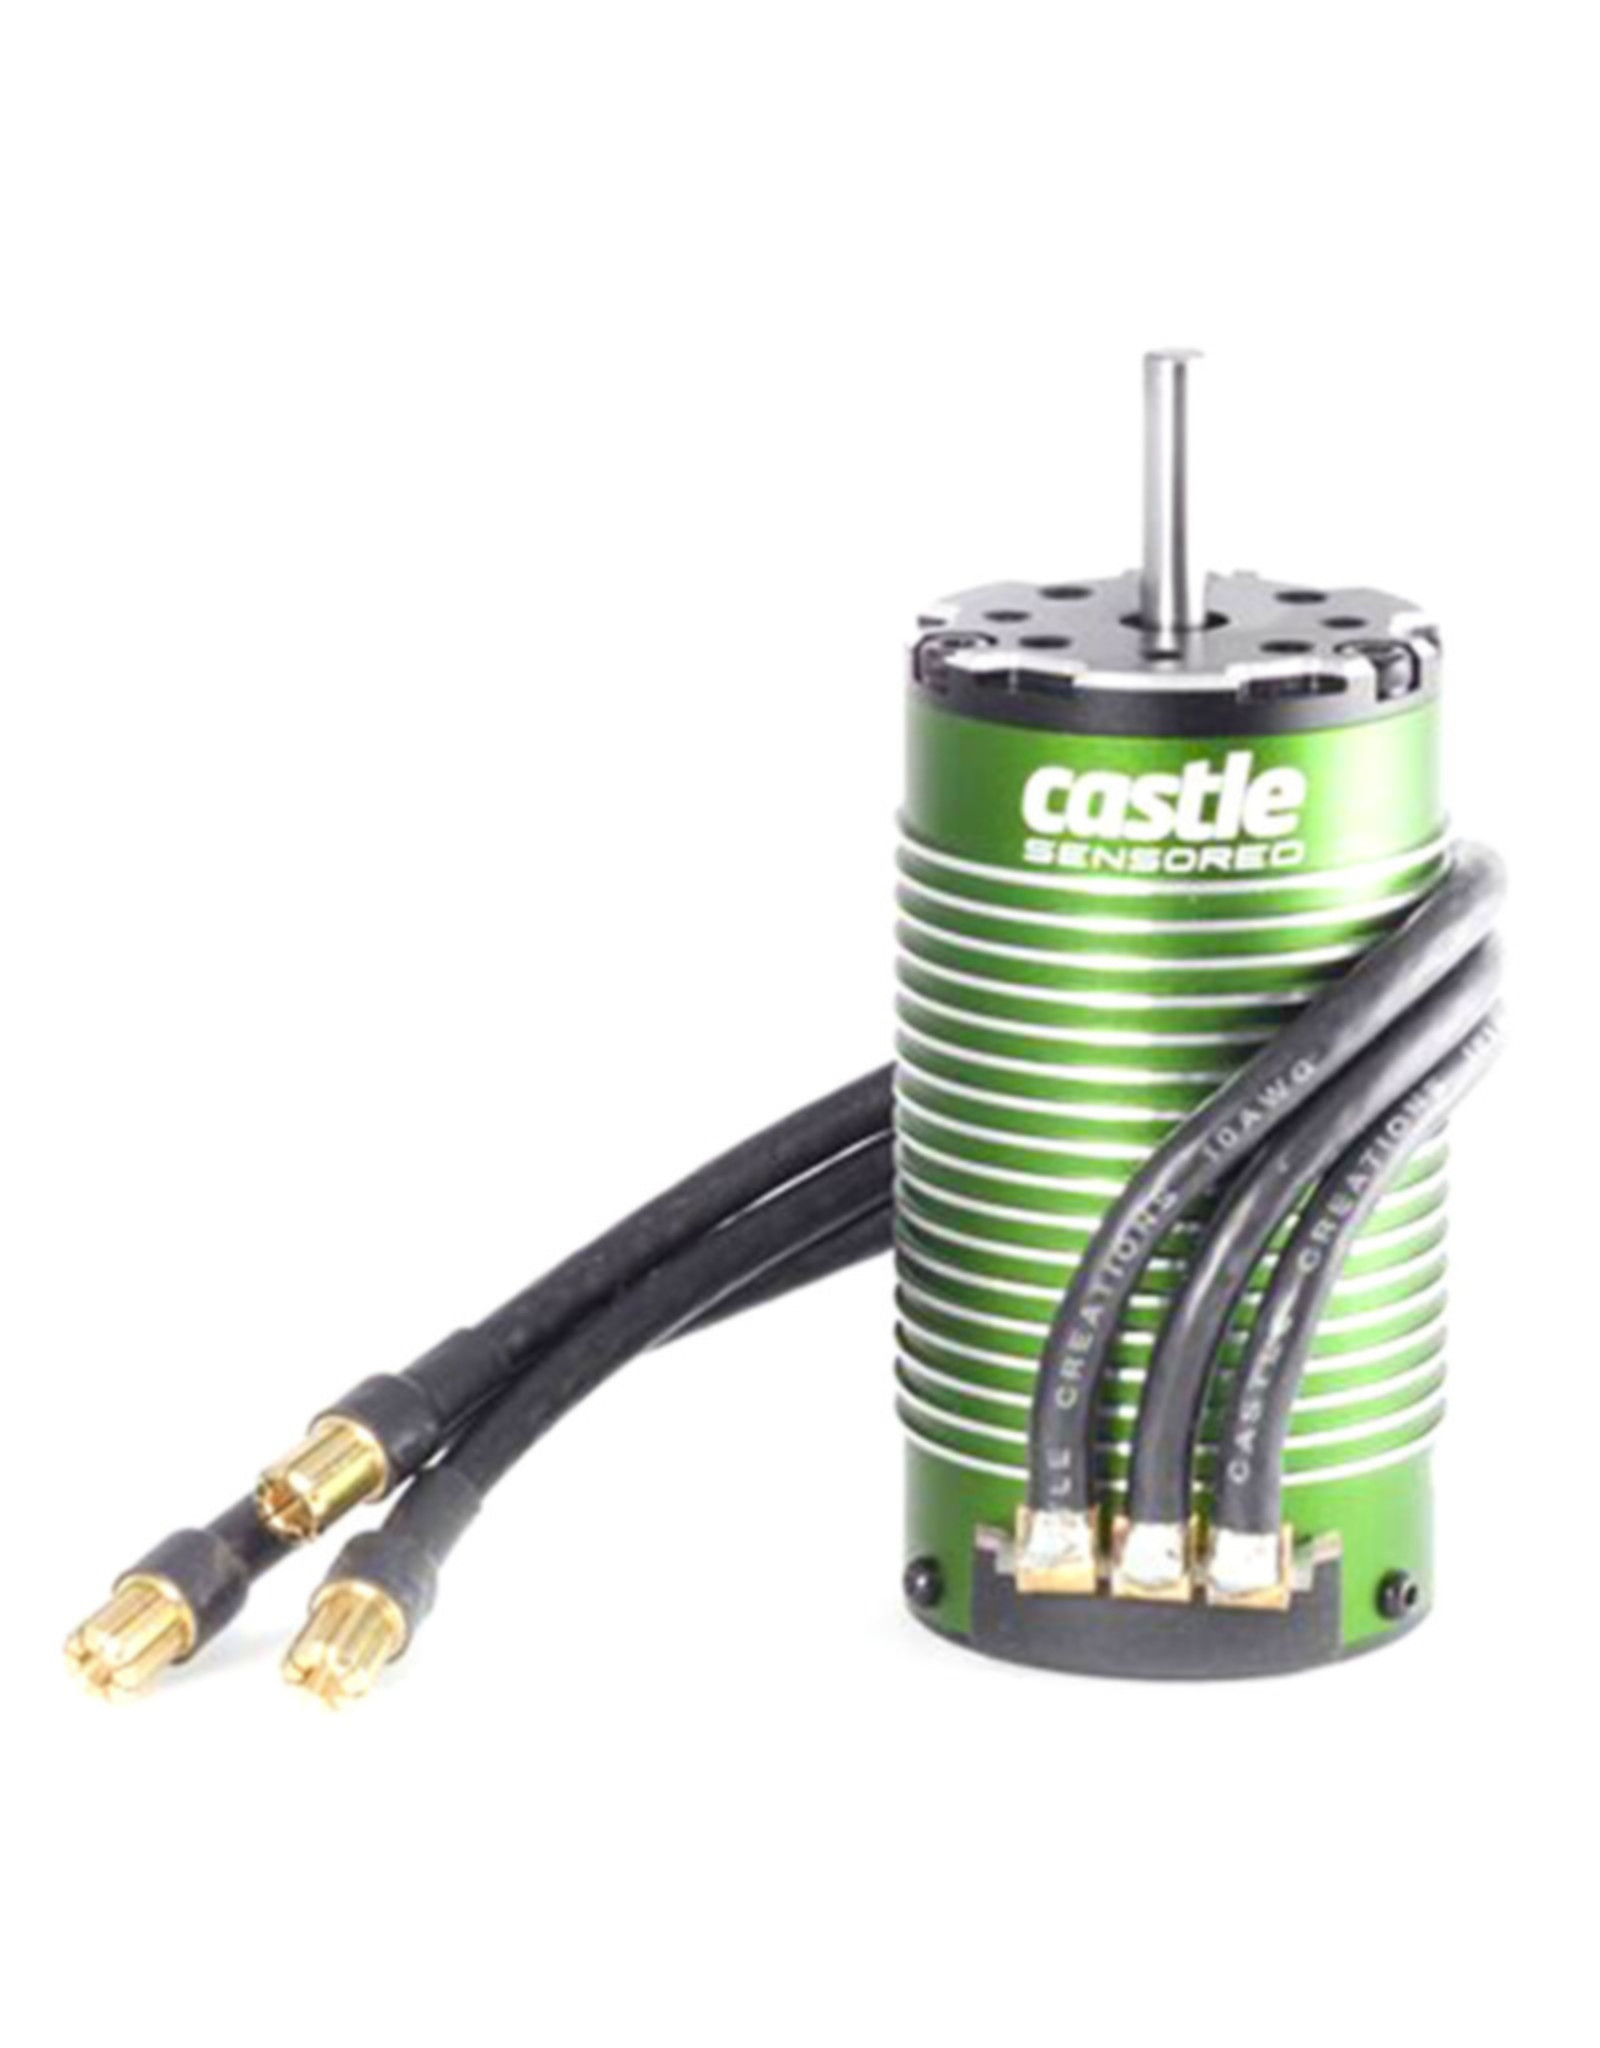 Castle Creations CSE060006100 4-Pole Sensored BL Motor, 1512-2650Kv